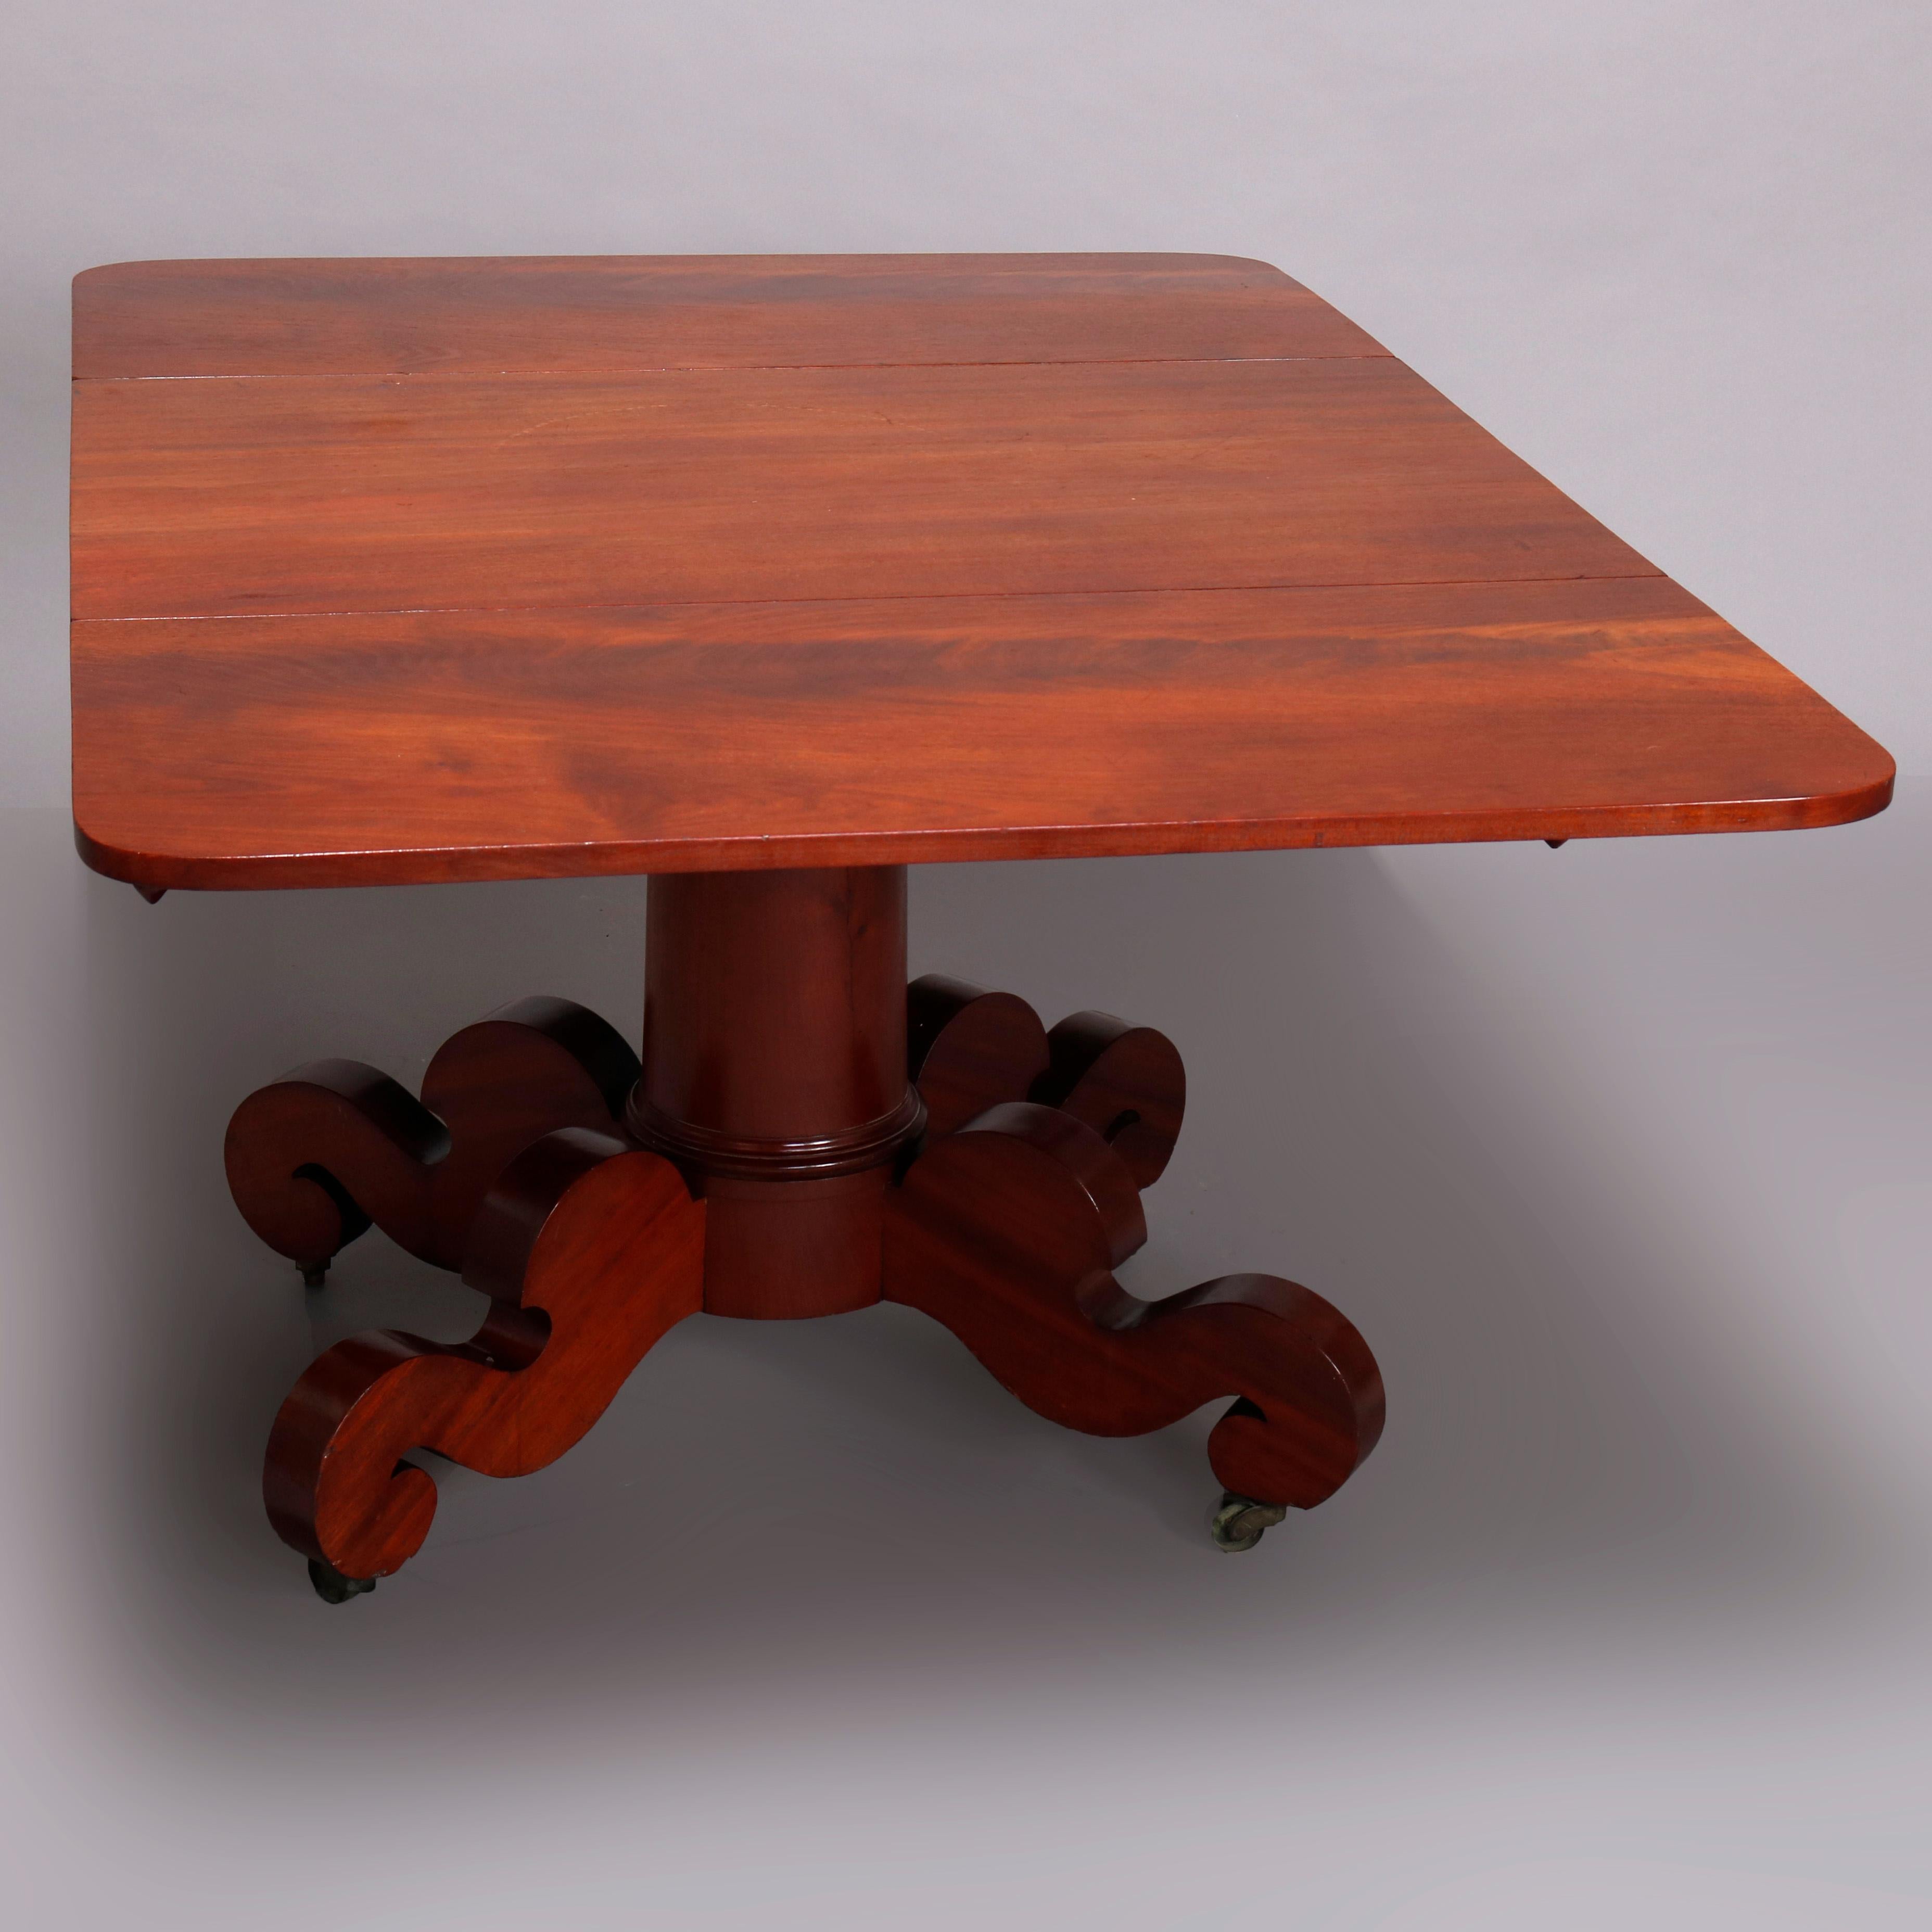 Eine antike amerikanische 
Empire-Tisch in der Art von Joseph Meeks bietet Mahagoni-Konstruktion mit Top mit Drop Blätter und hob auf Sockel mit Scroll Form Füße, c1840

Maße - 39 